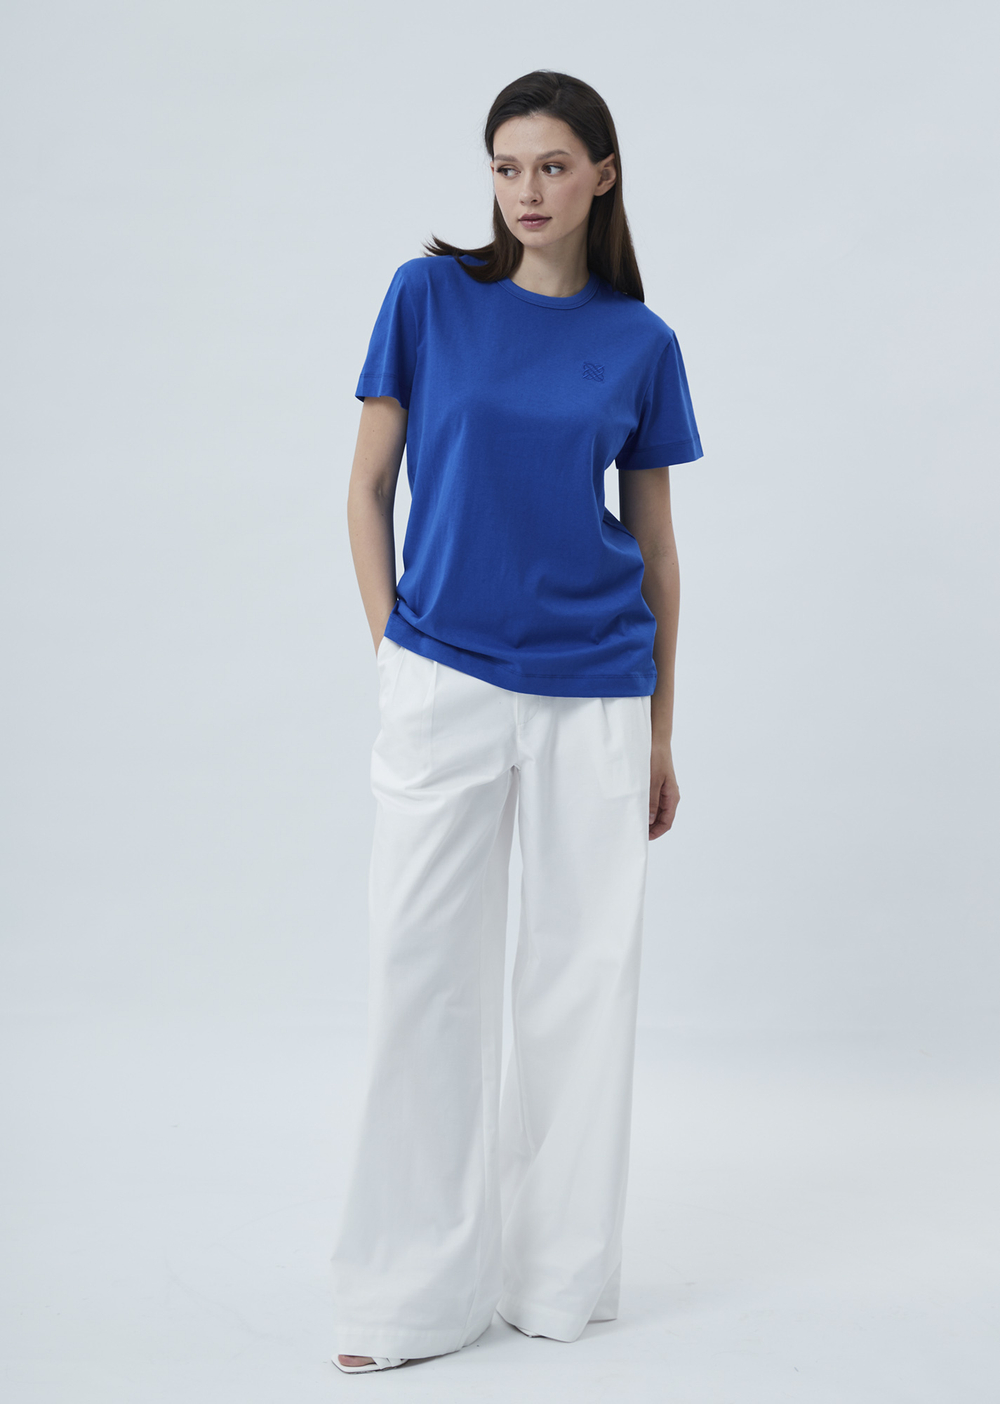 Женская футболка с вышивкой синий р.S